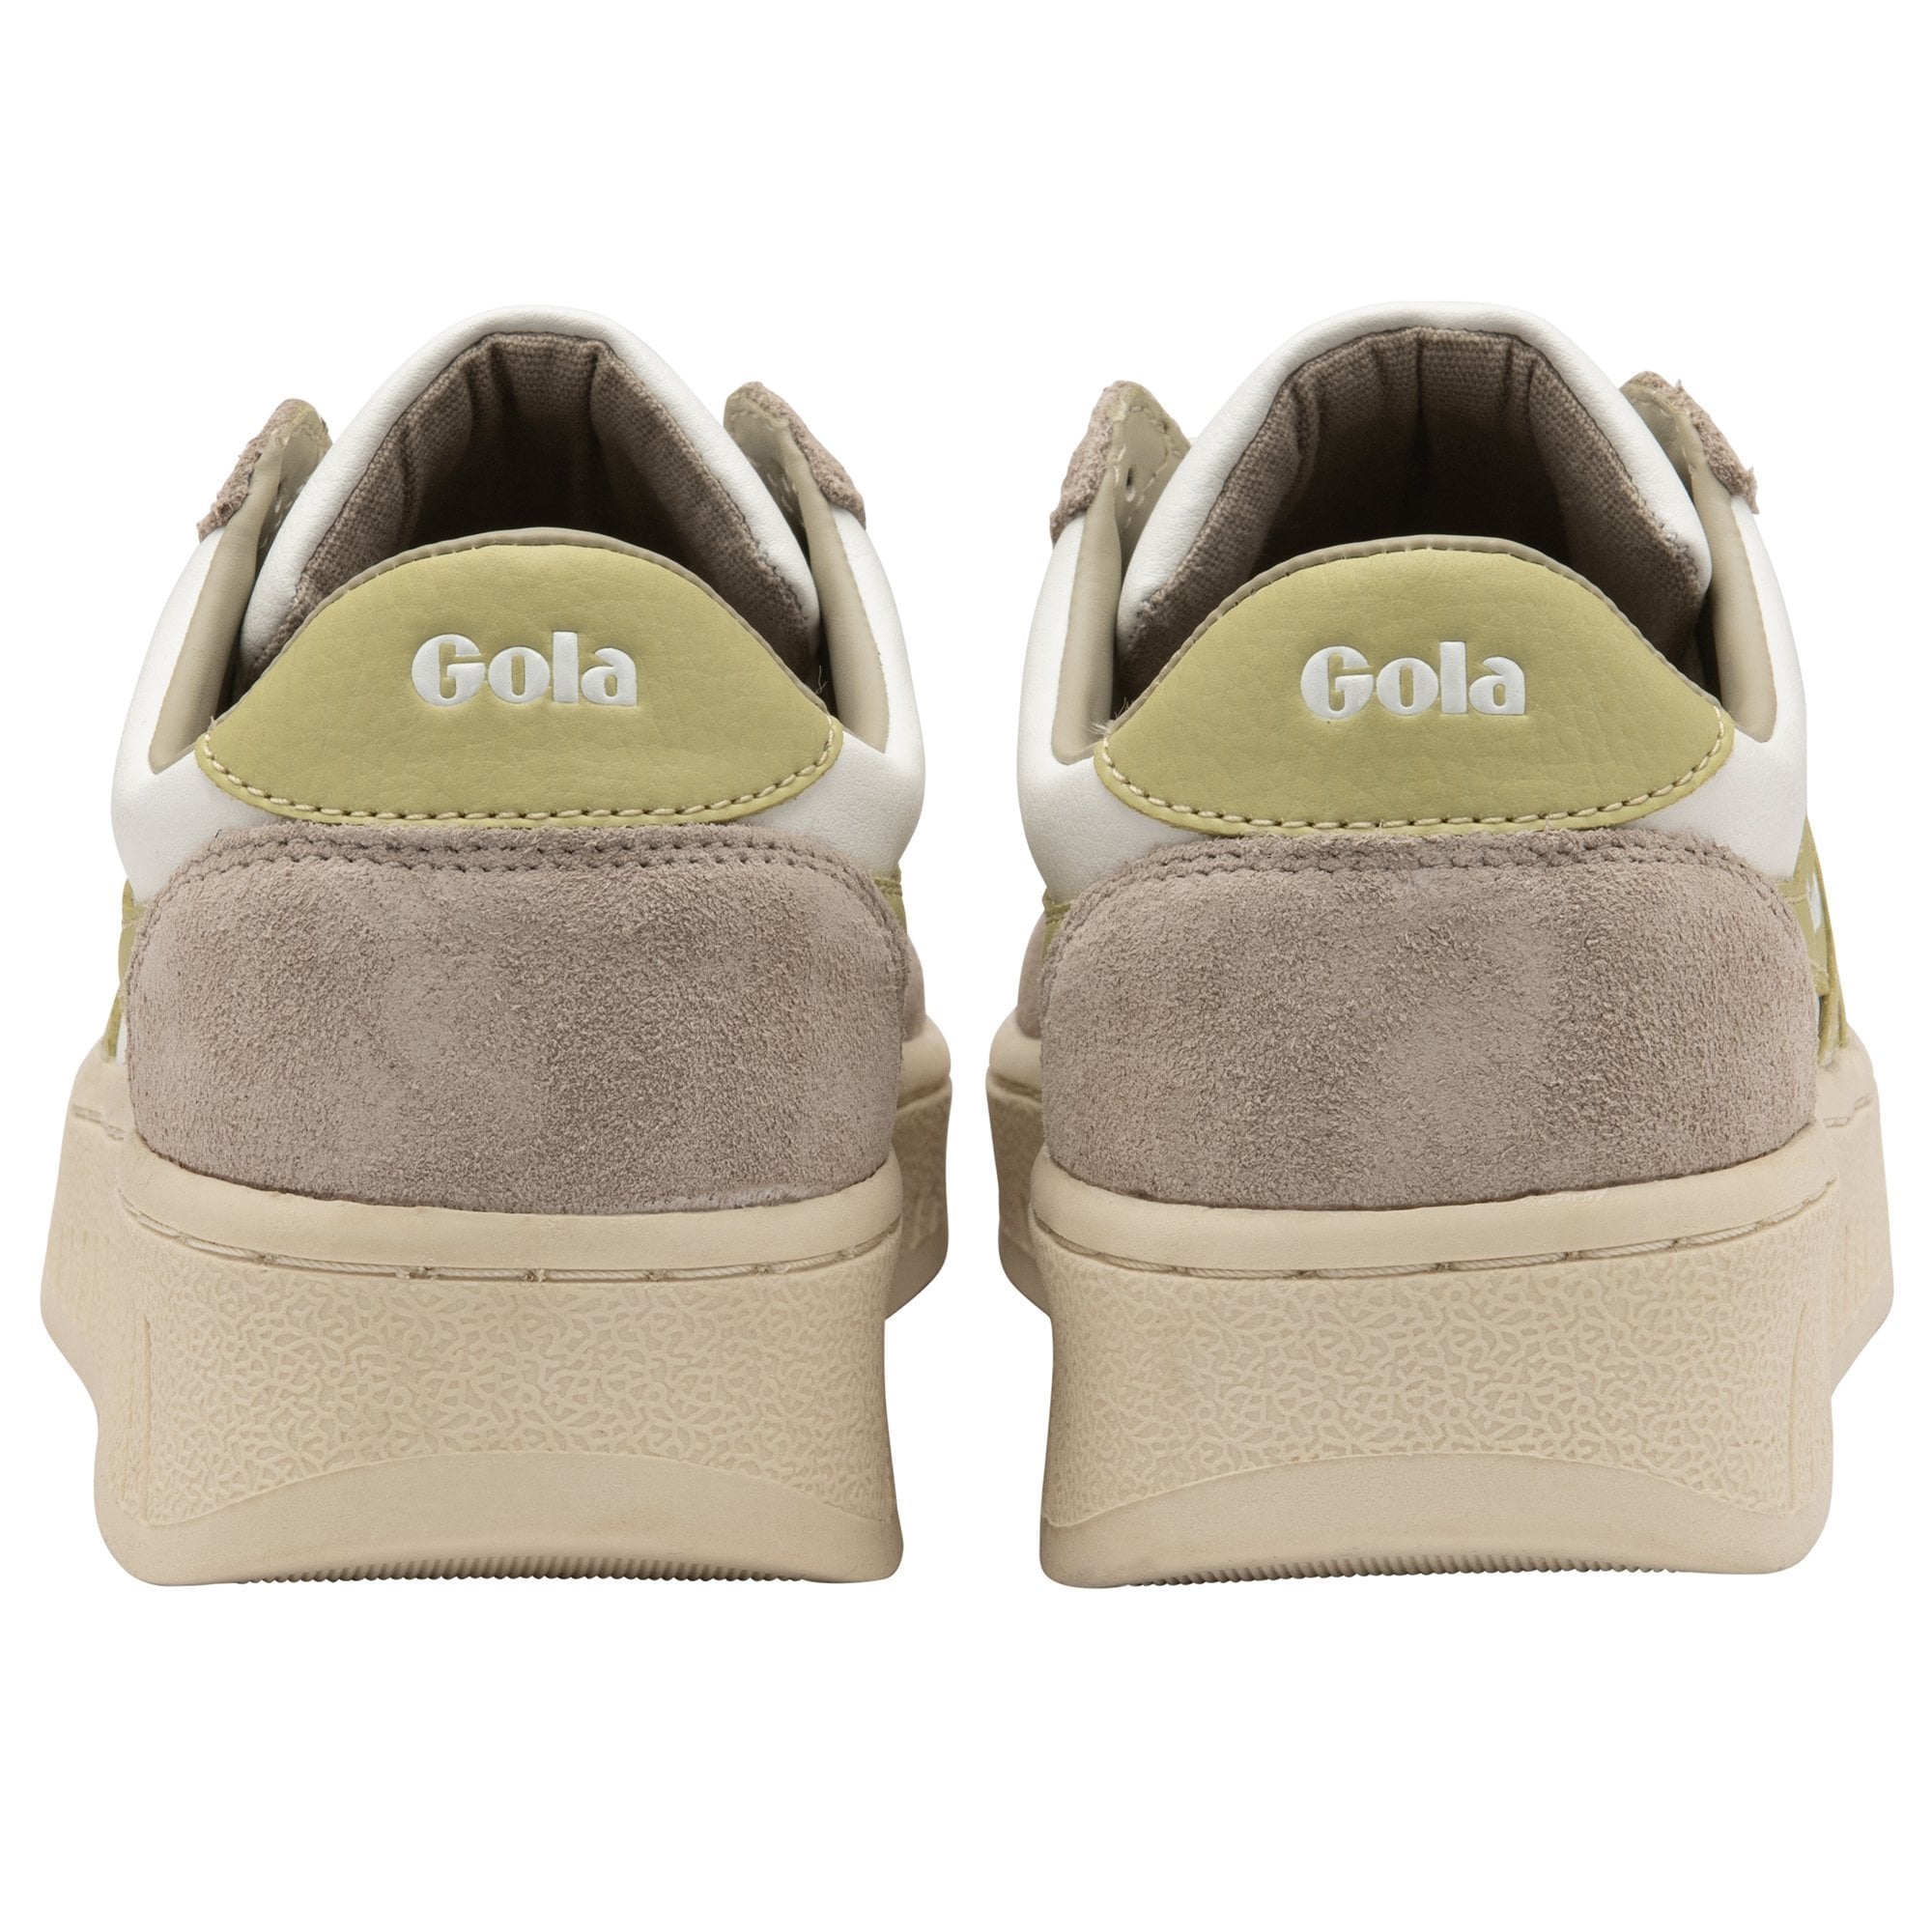 Gola sneakers for - Gem